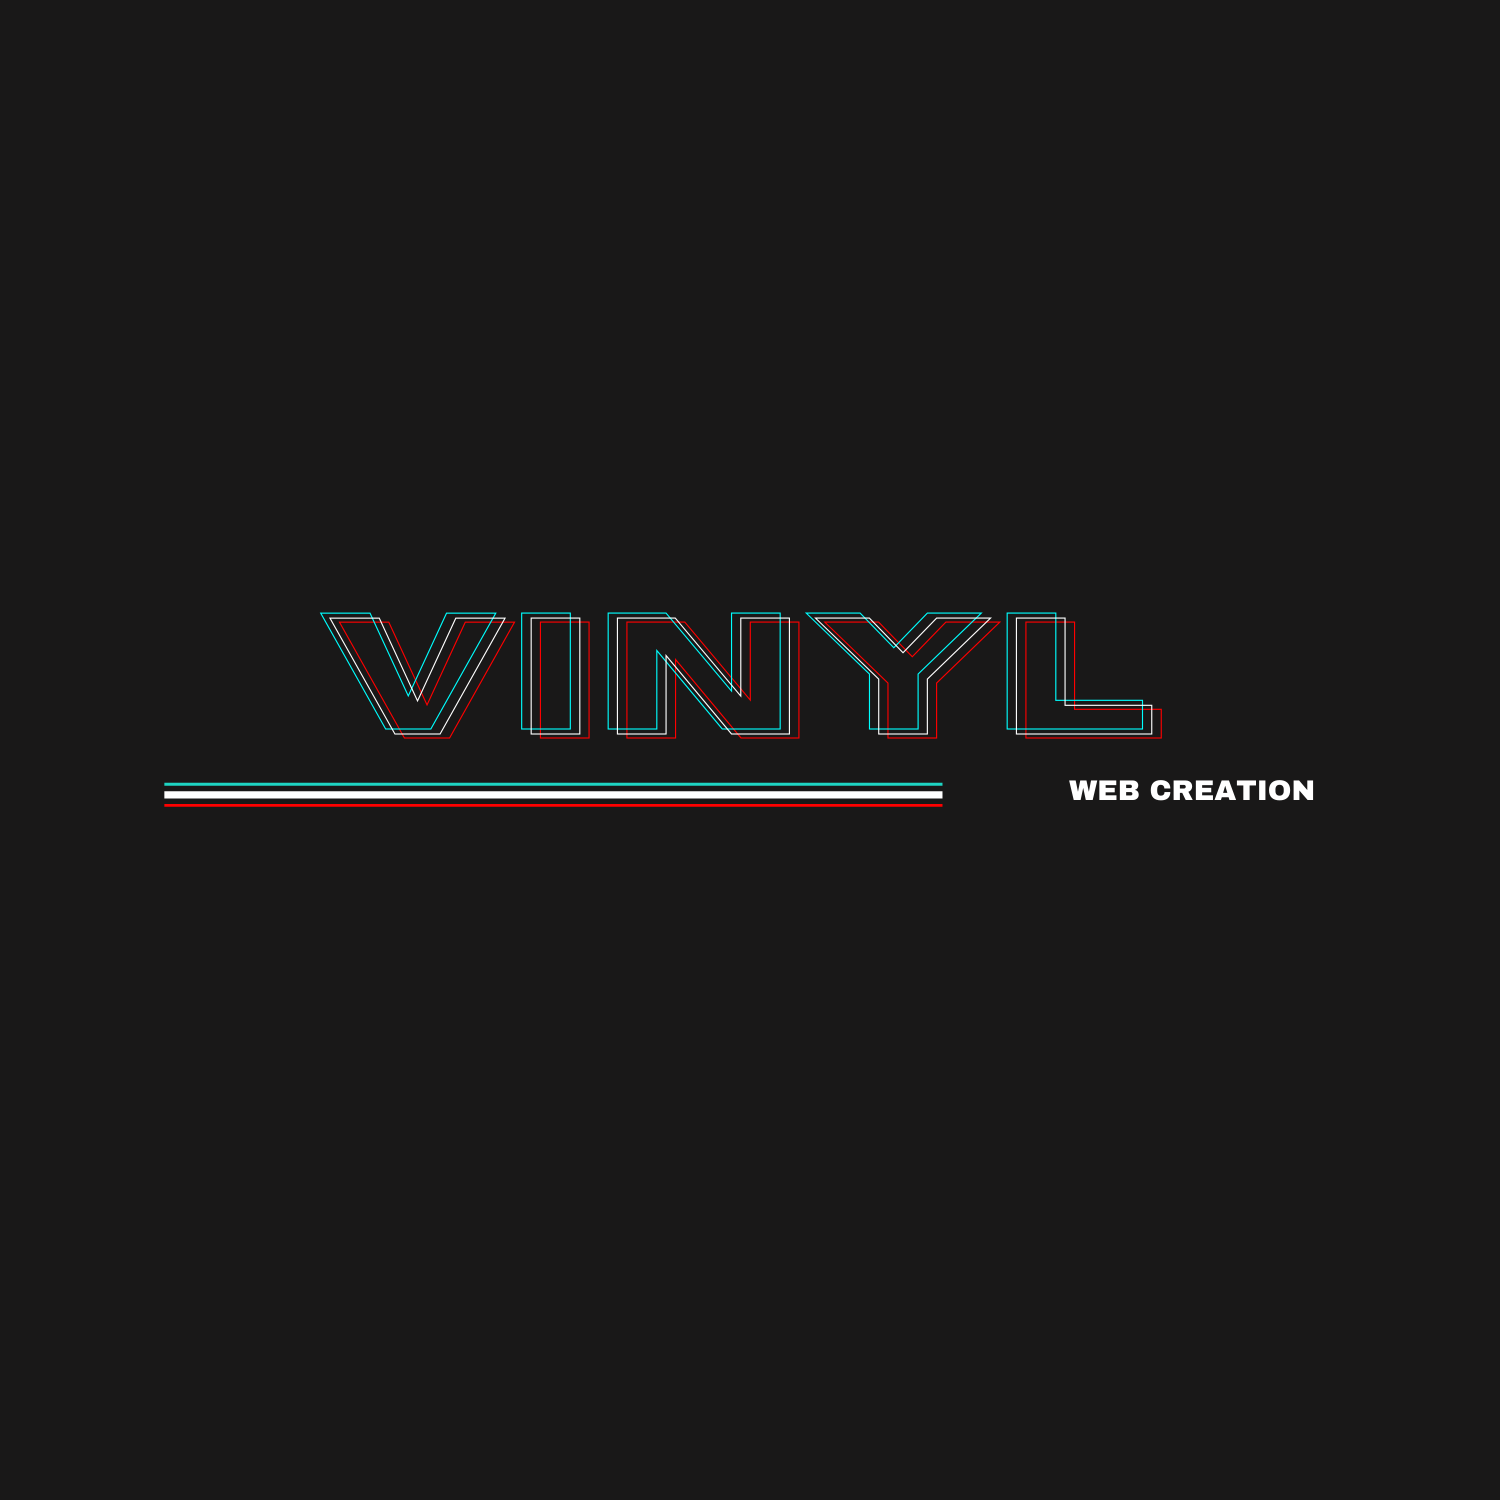 Vinyl WebCreation